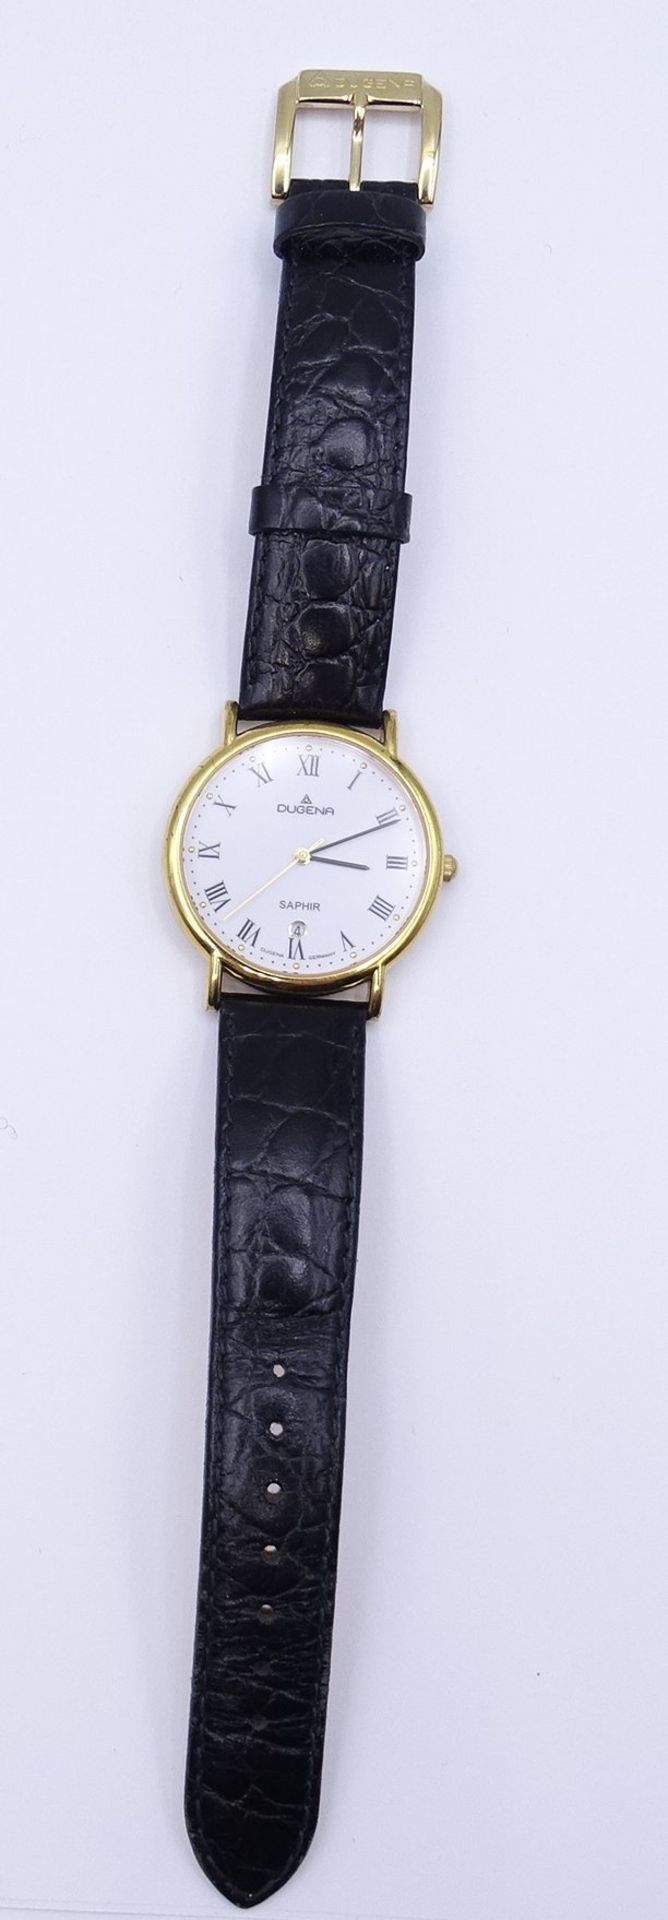 Herren Armbanduhr DUGENA SAPHIR, Quartzwerk, D. 35mm, goldfarbenes Gehäuse, ungetragen, steht - Bild 7 aus 7